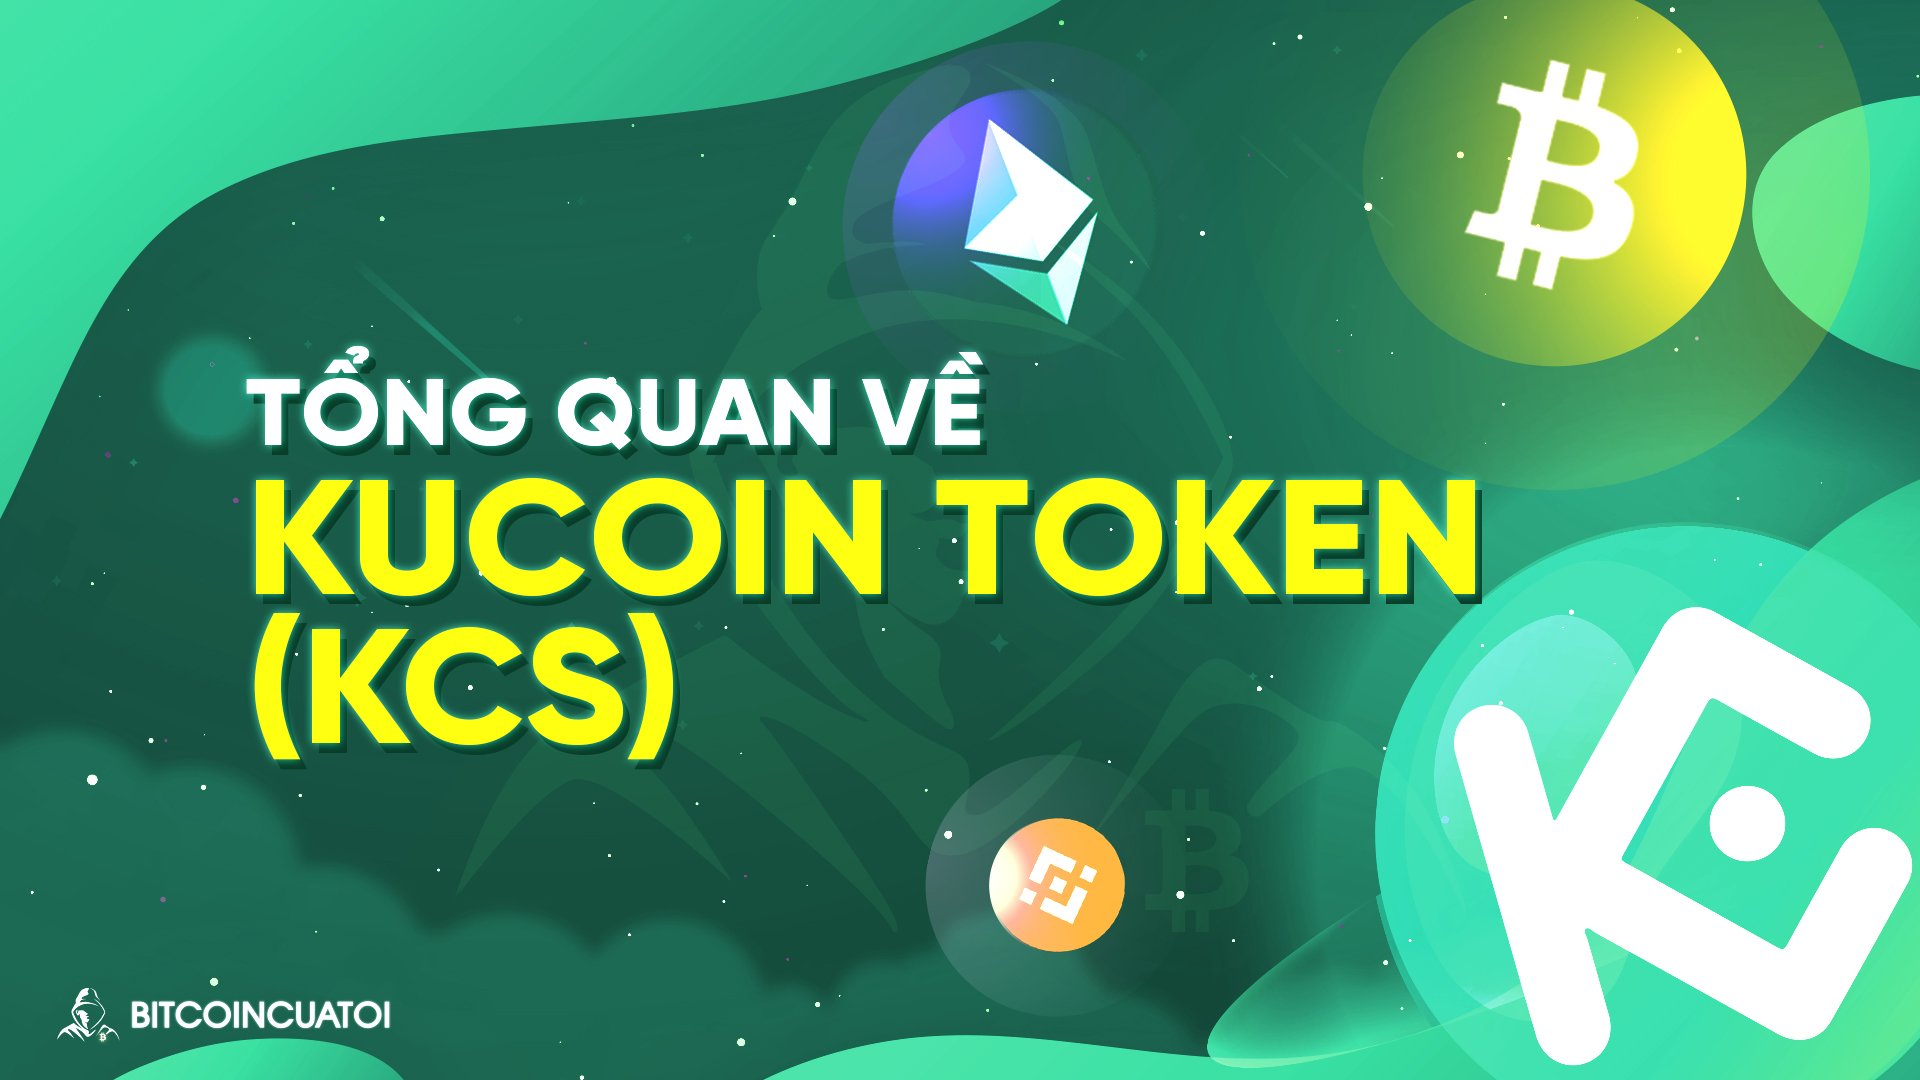 Kucoin Token (KCS) là gì? Tìm hiểu về token gốc của sàn KuCoin